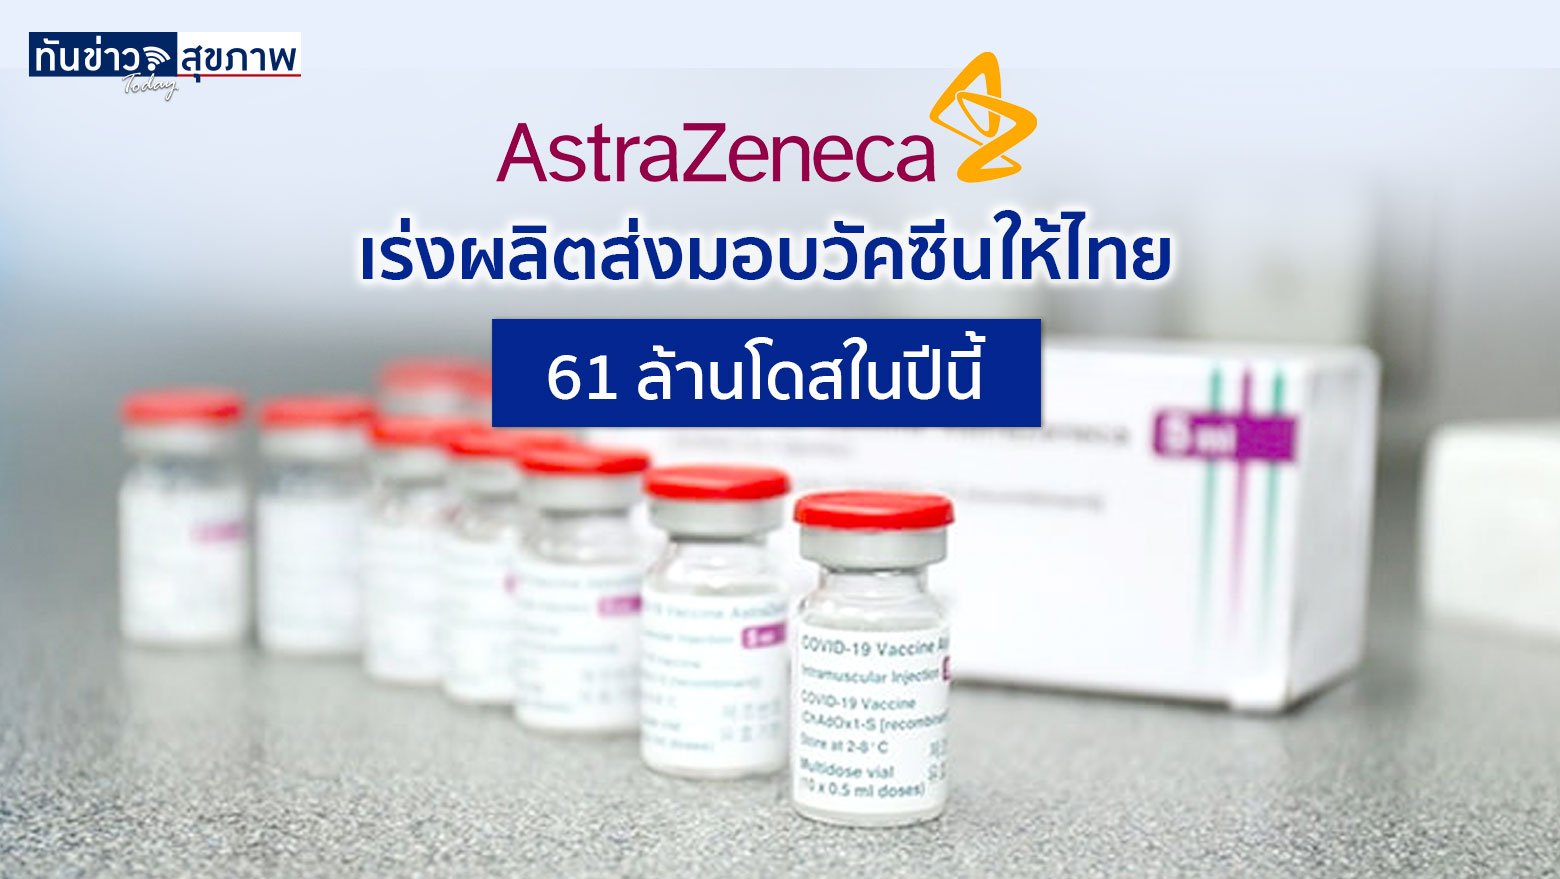 AstraZeneca  เร่งการผลิตและนำเข้าวัคซีนจากแหล่งอื่น ส่งมอบให้ไทย 61 ล้านโดสในปีนี้ และปีหน้าอีก 60 ล้านโดส